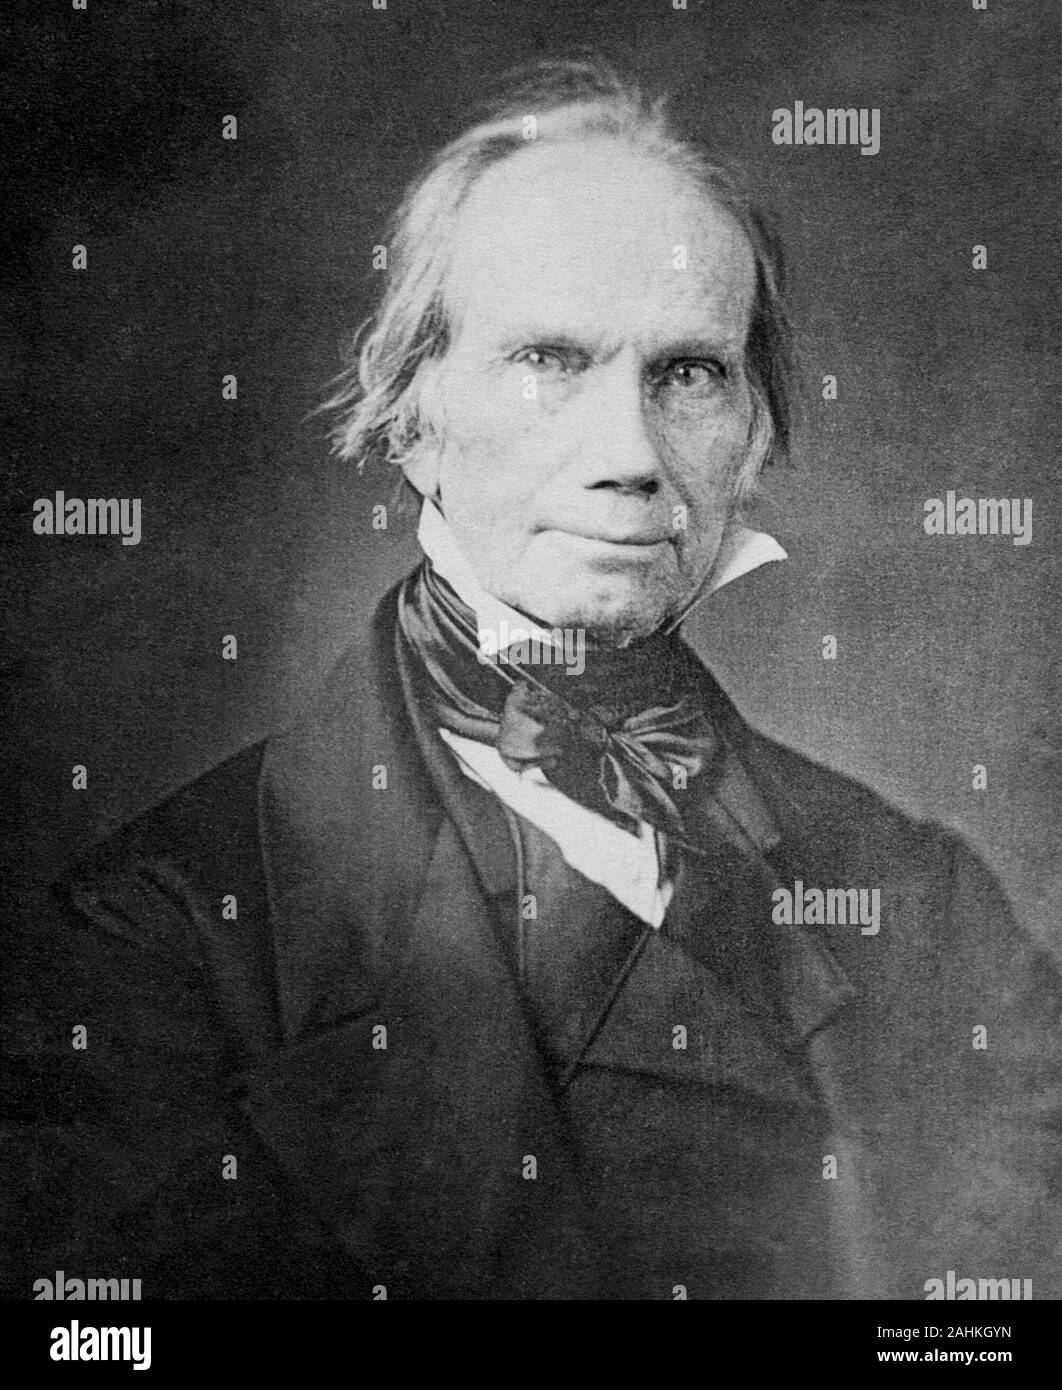 Henry Clay S. (1777 - 1852) Avocat et homme d'État américain qui a représenté le Kentucky aux États-Unis Sénat et Chambre des représentants des États-Unis, a servi comme septième président de la Chambre des représentants des États-Unis, et a été le neuvième secrétaire d'État américaine Banque D'Images